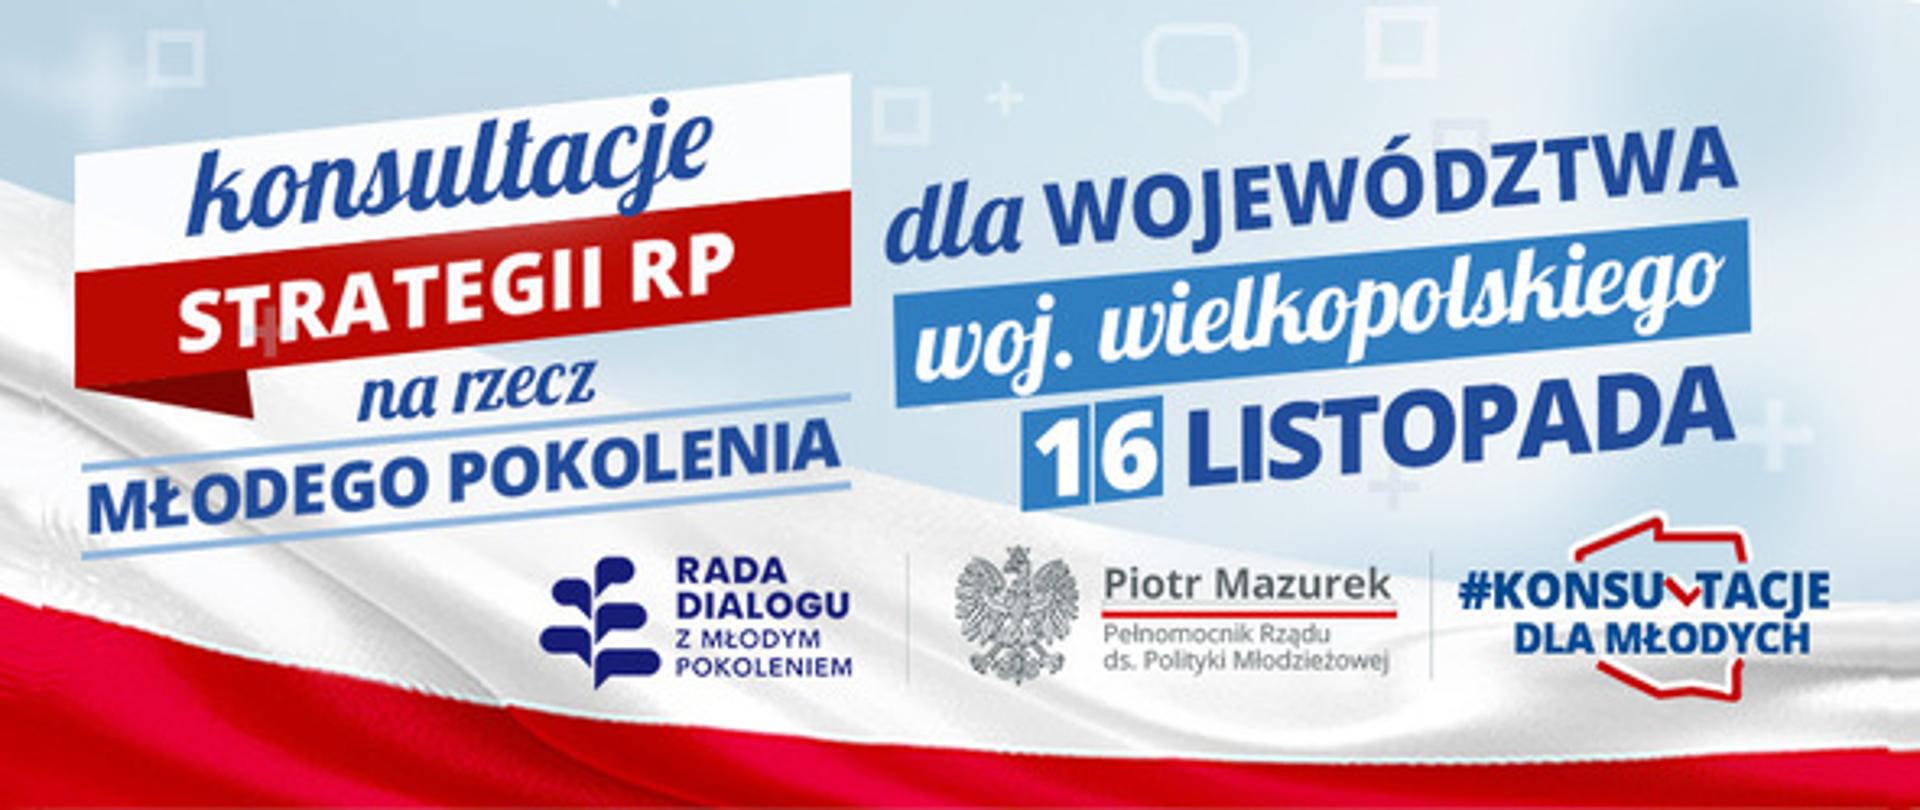 konsultacje_wielkopolskiego_gov_pl_1636036503